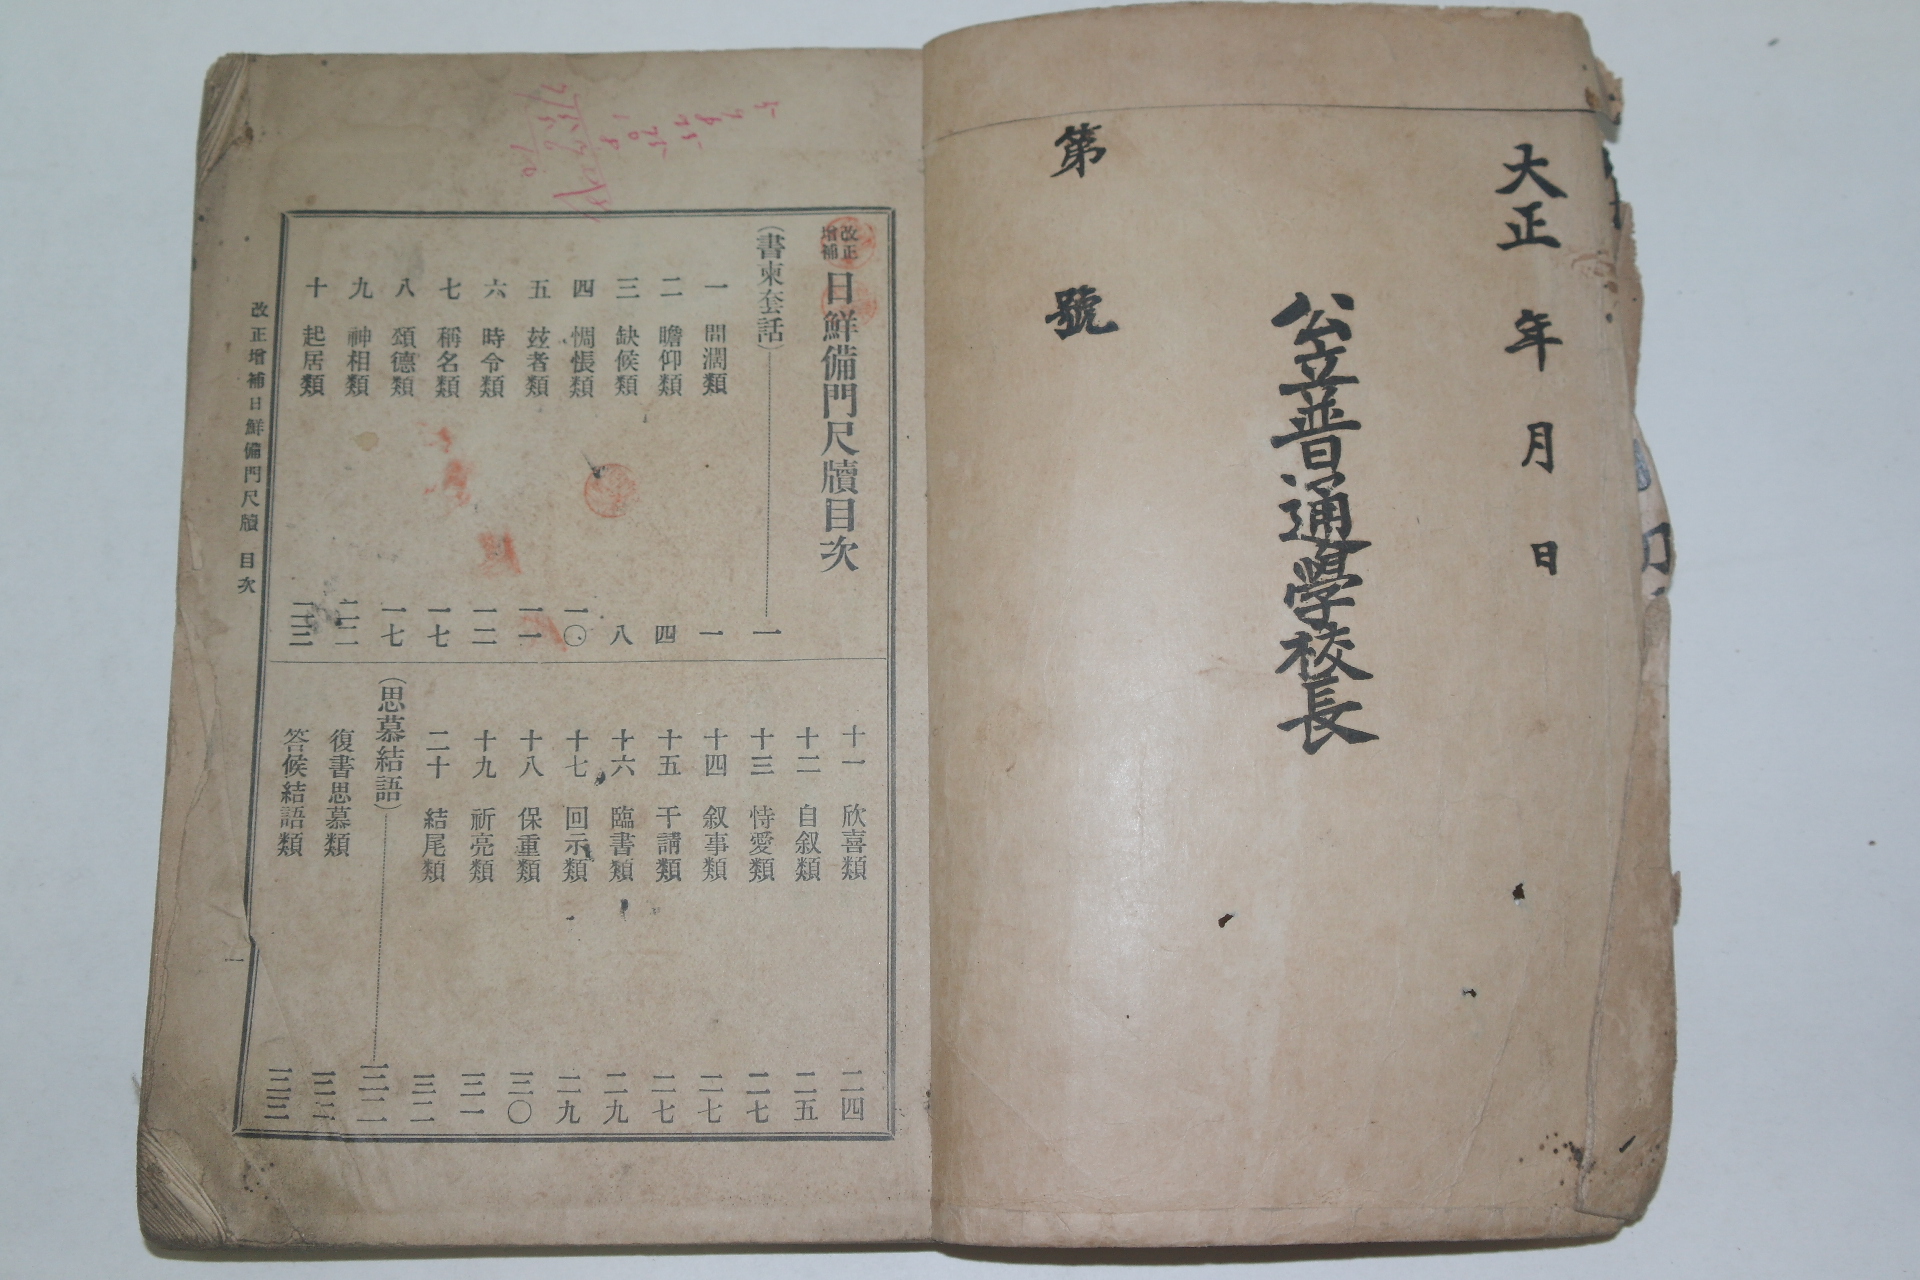 1913년 개정정보 일선비문척독(日鮮備門尺牘)